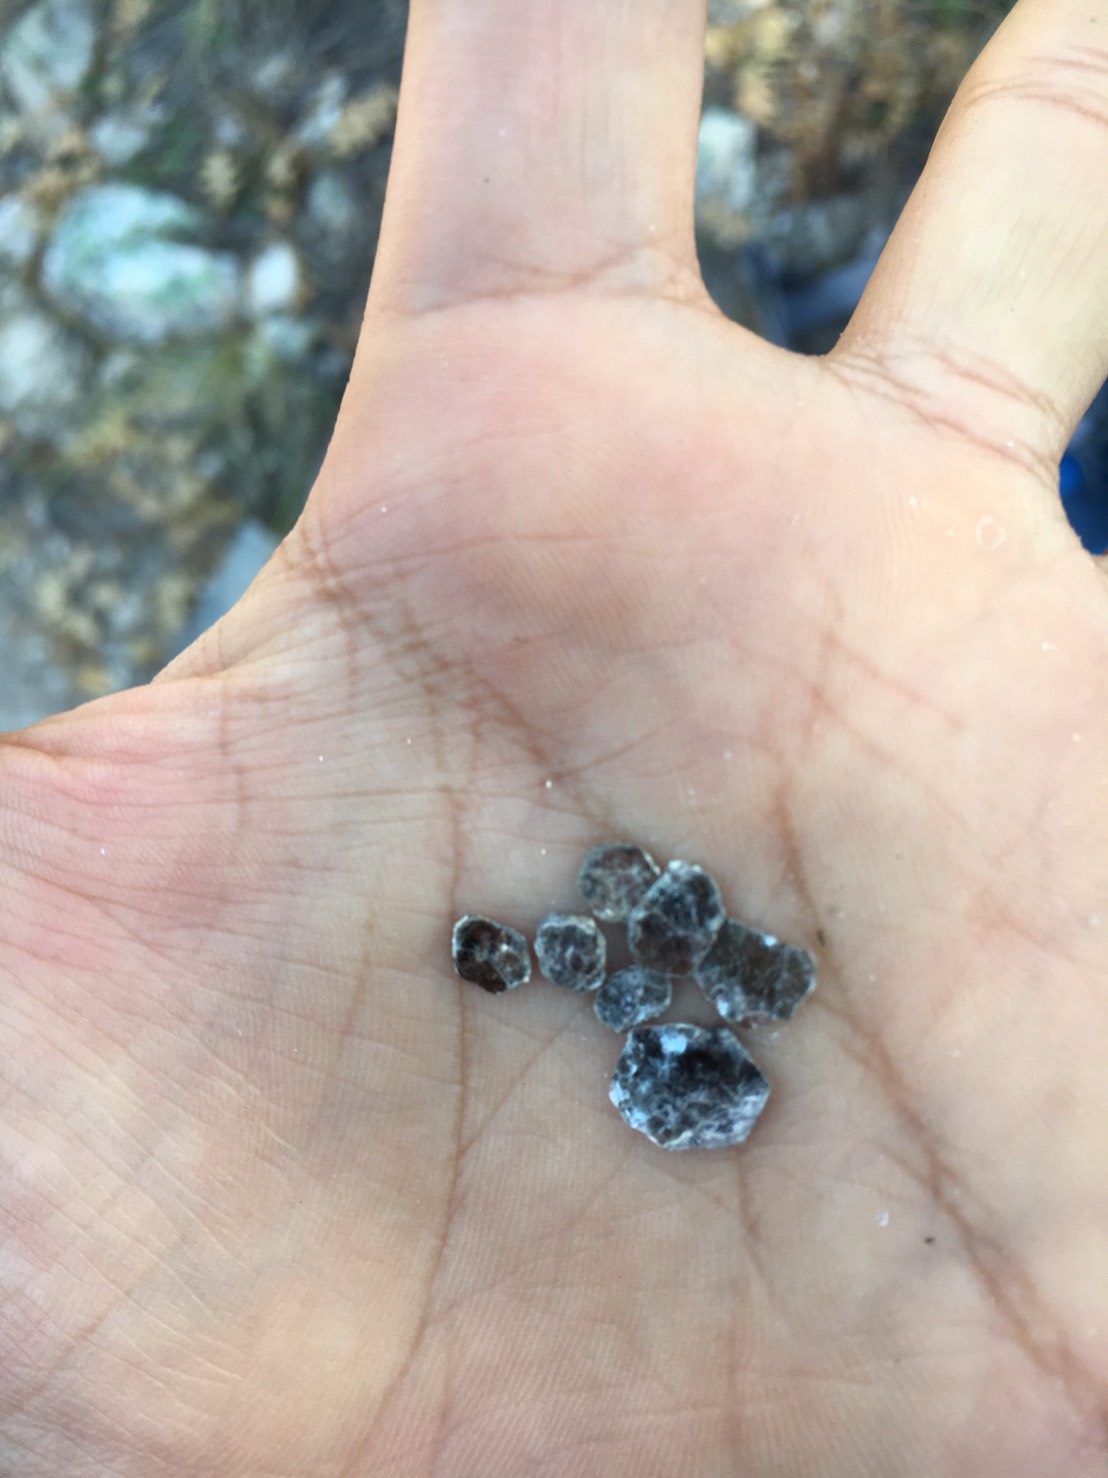 アメリカ合衆国アリゾナ州の土の中から取り出したマイカの結晶です。日本の土にこんな大きな結晶が含まれることは珍しいですが、これが小さくなったものが隠れています。